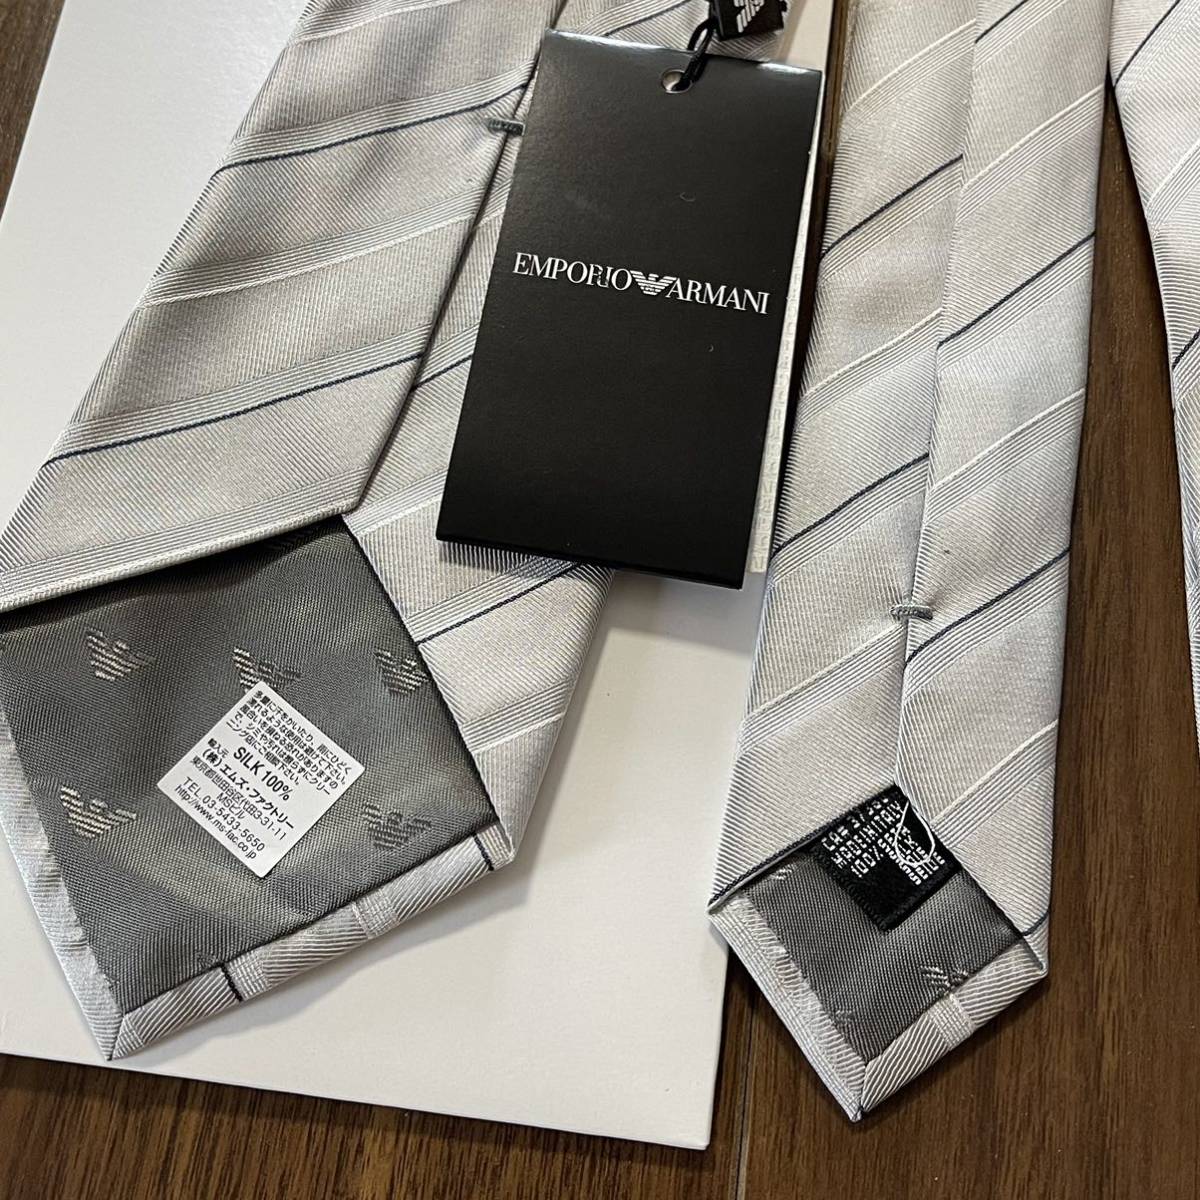 EMPORIO ARMANI( Emporio Armani ) серебряный полоса галстук новый товар не использовался с биркой с коробкой 